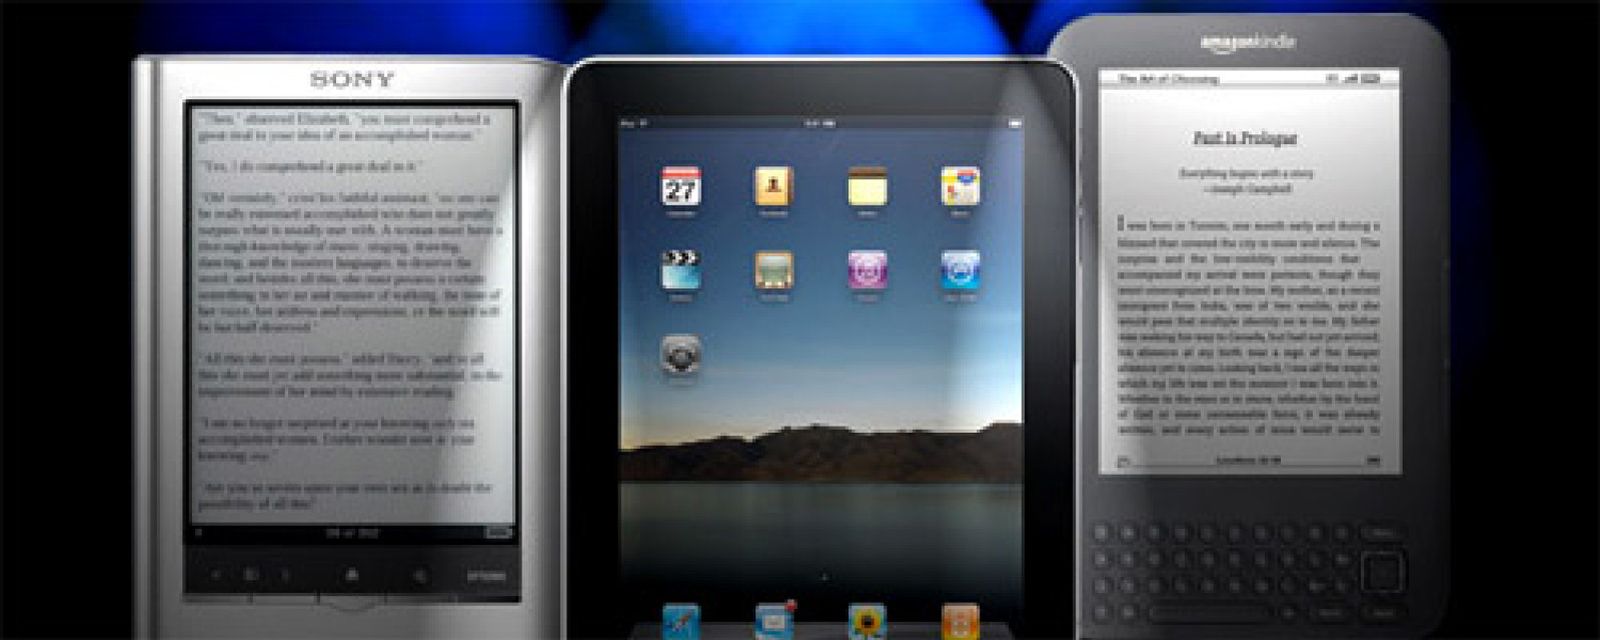 Kindle o iPad para lectura, ¿cuál es mejor? Pros, contras y